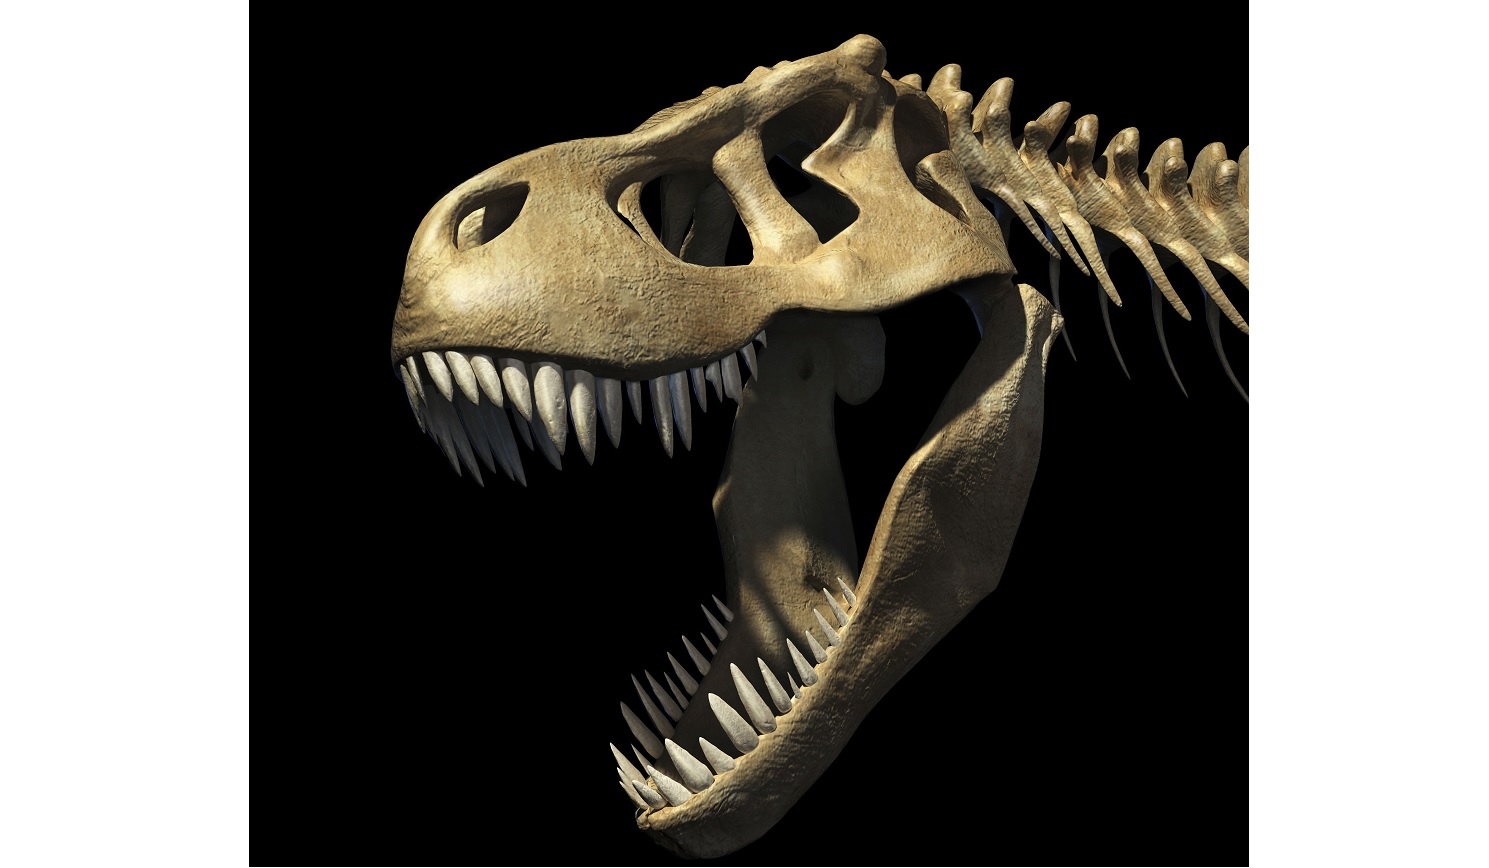 Biolégkondival hűtötte az agyát a Tyrannosaurus rex